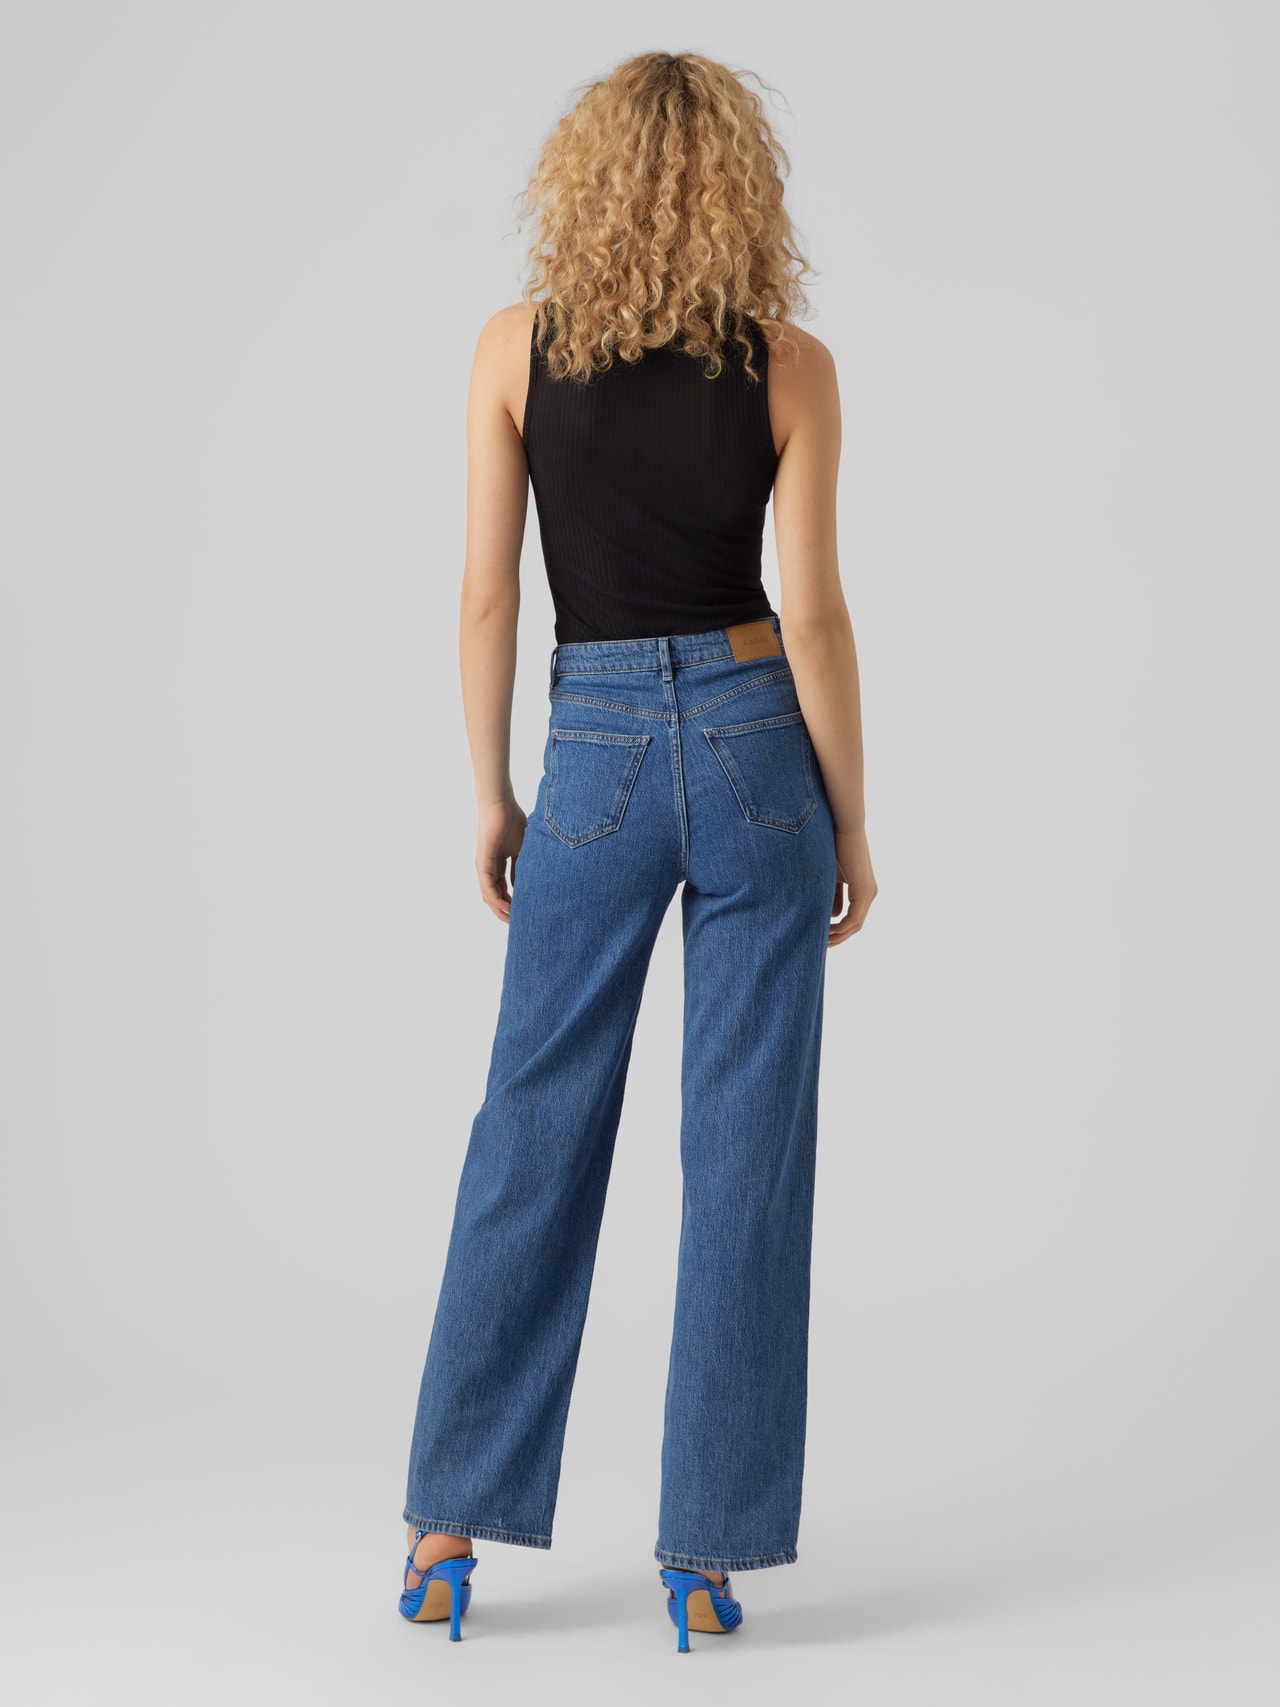 Vero Moda VMREBECCA Super high rise Regular Fit Jeans -Medium Blue Denim - 10275575